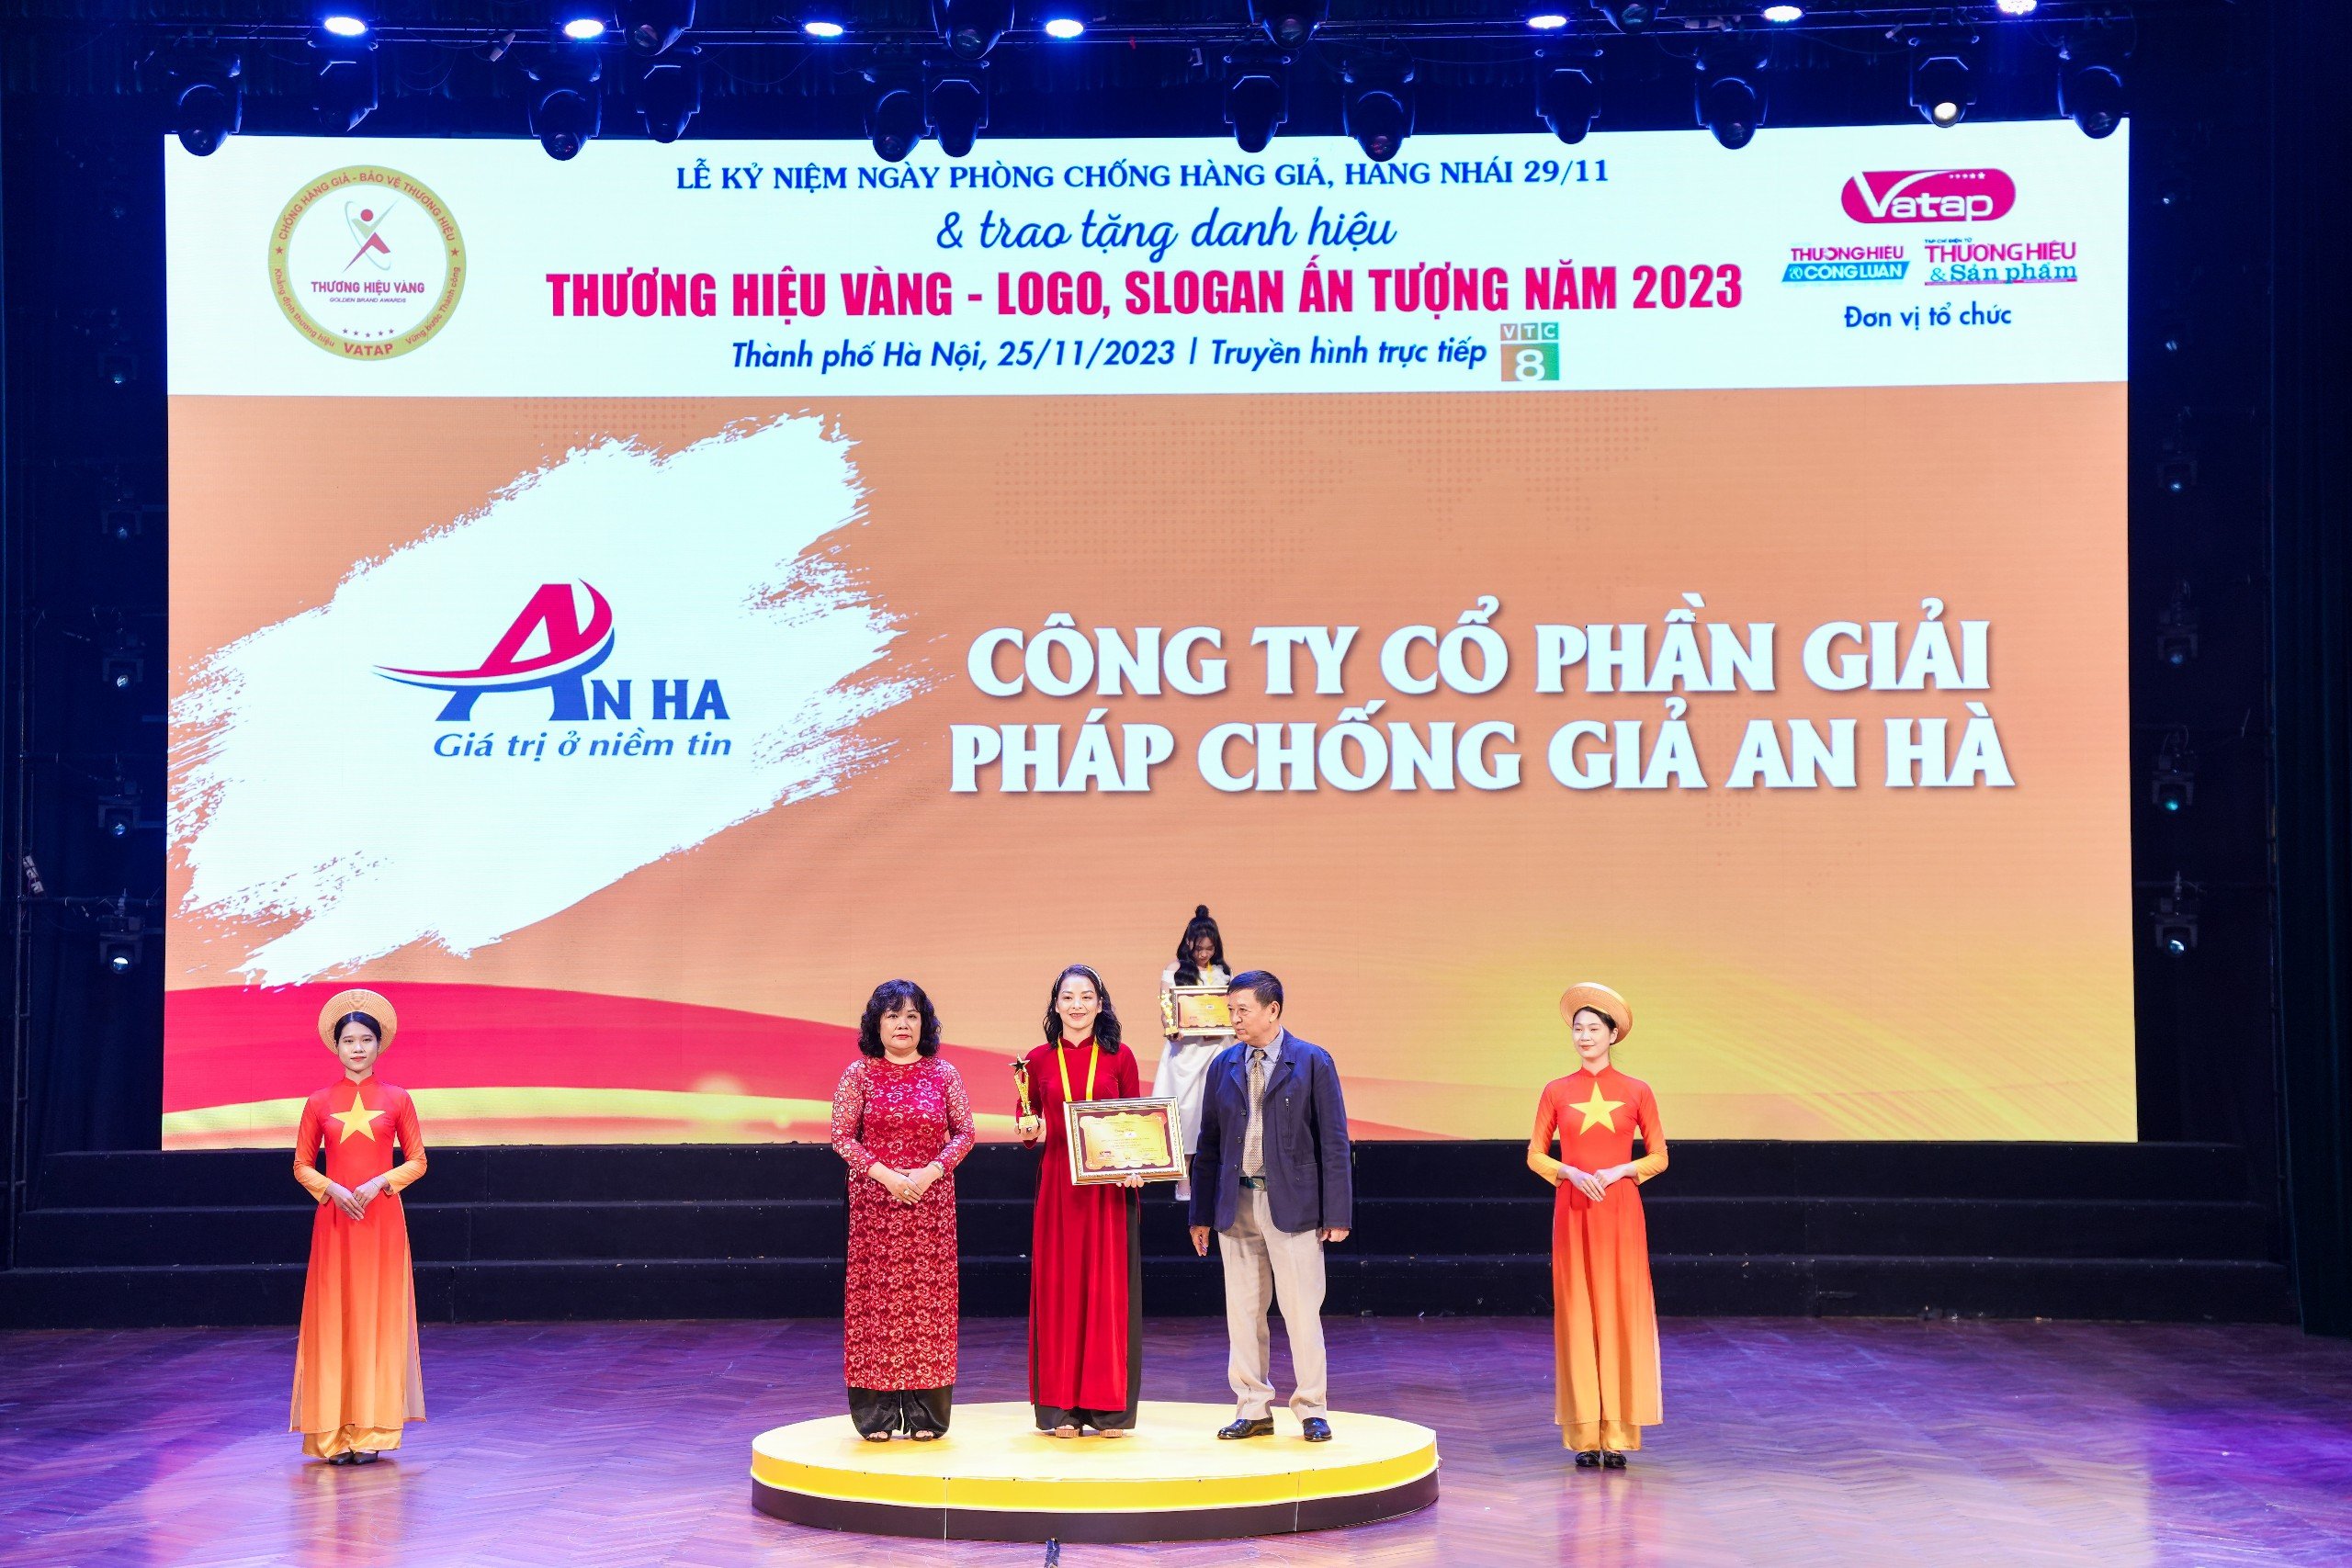 Bà Trần Thanh Hảo giám đốc công ty An Hà lên nhận giải thưởng vinh danh Top 10 thương hiệu vàng năm 2023